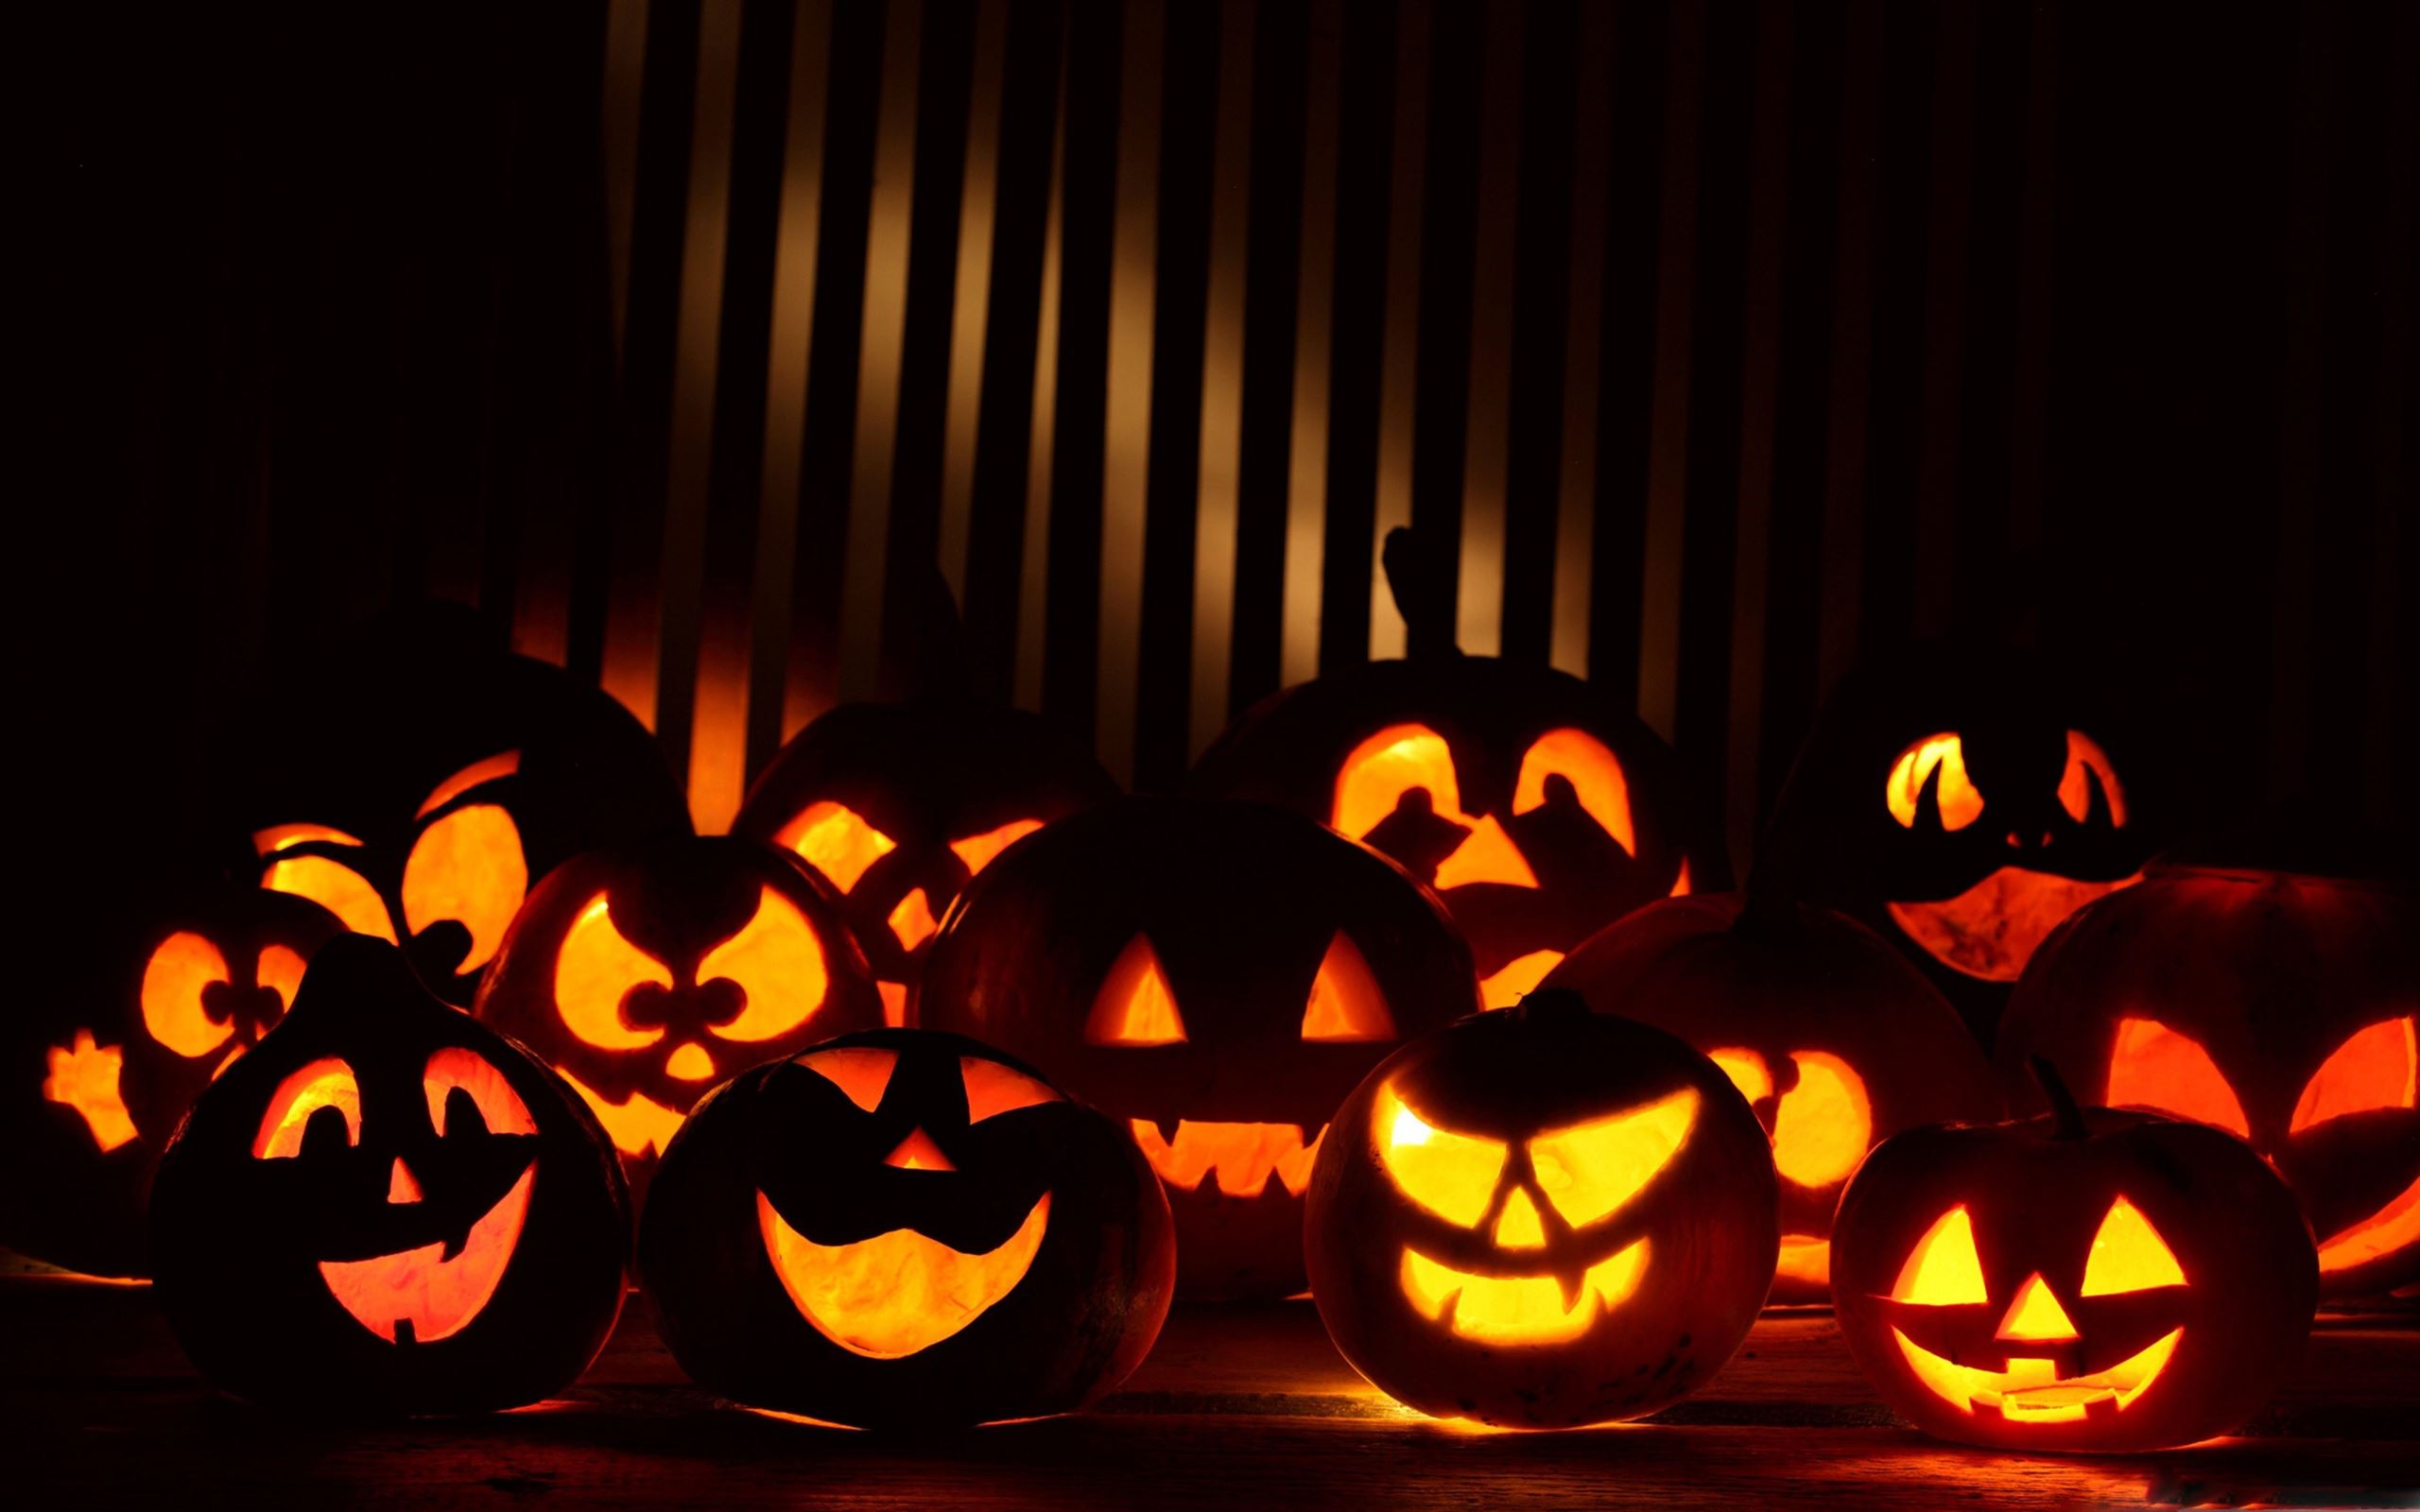 Halloween Pumpkins In The Dark Mac Wallpaper Download